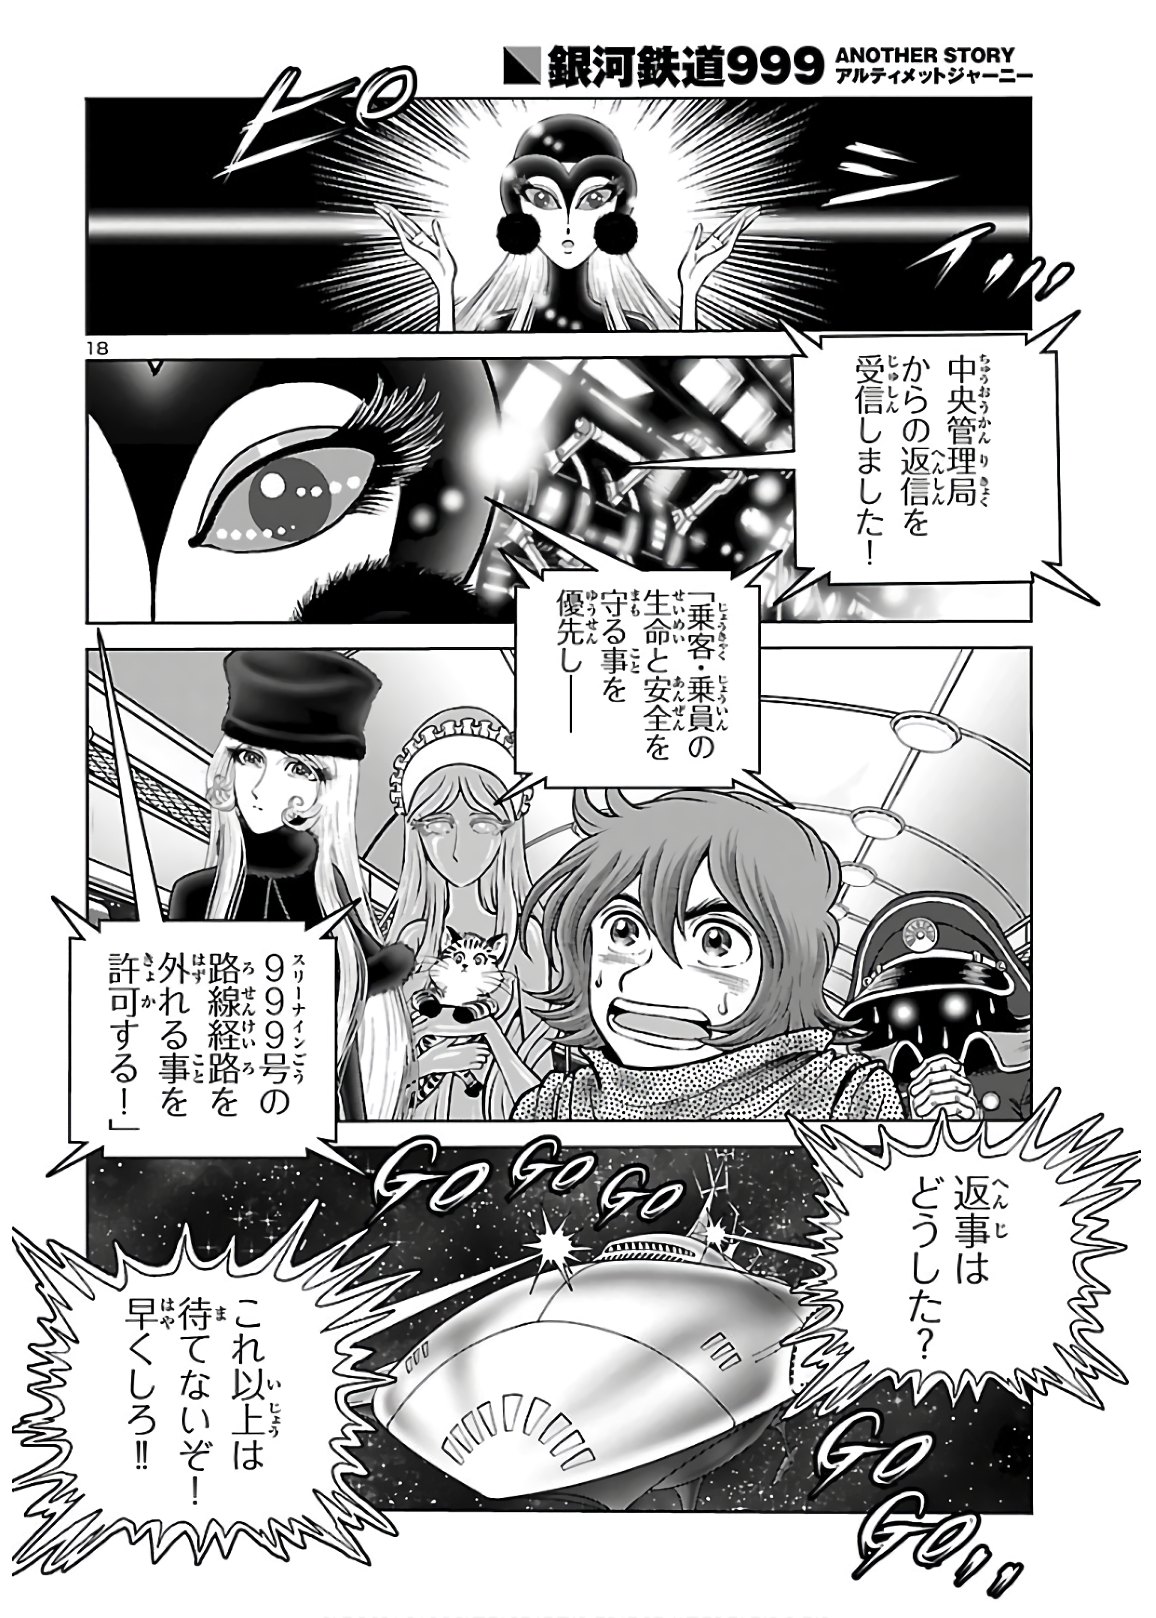 銀河鉄道999–Another Story–アルティメットジャーニー 第30話 - Page 18